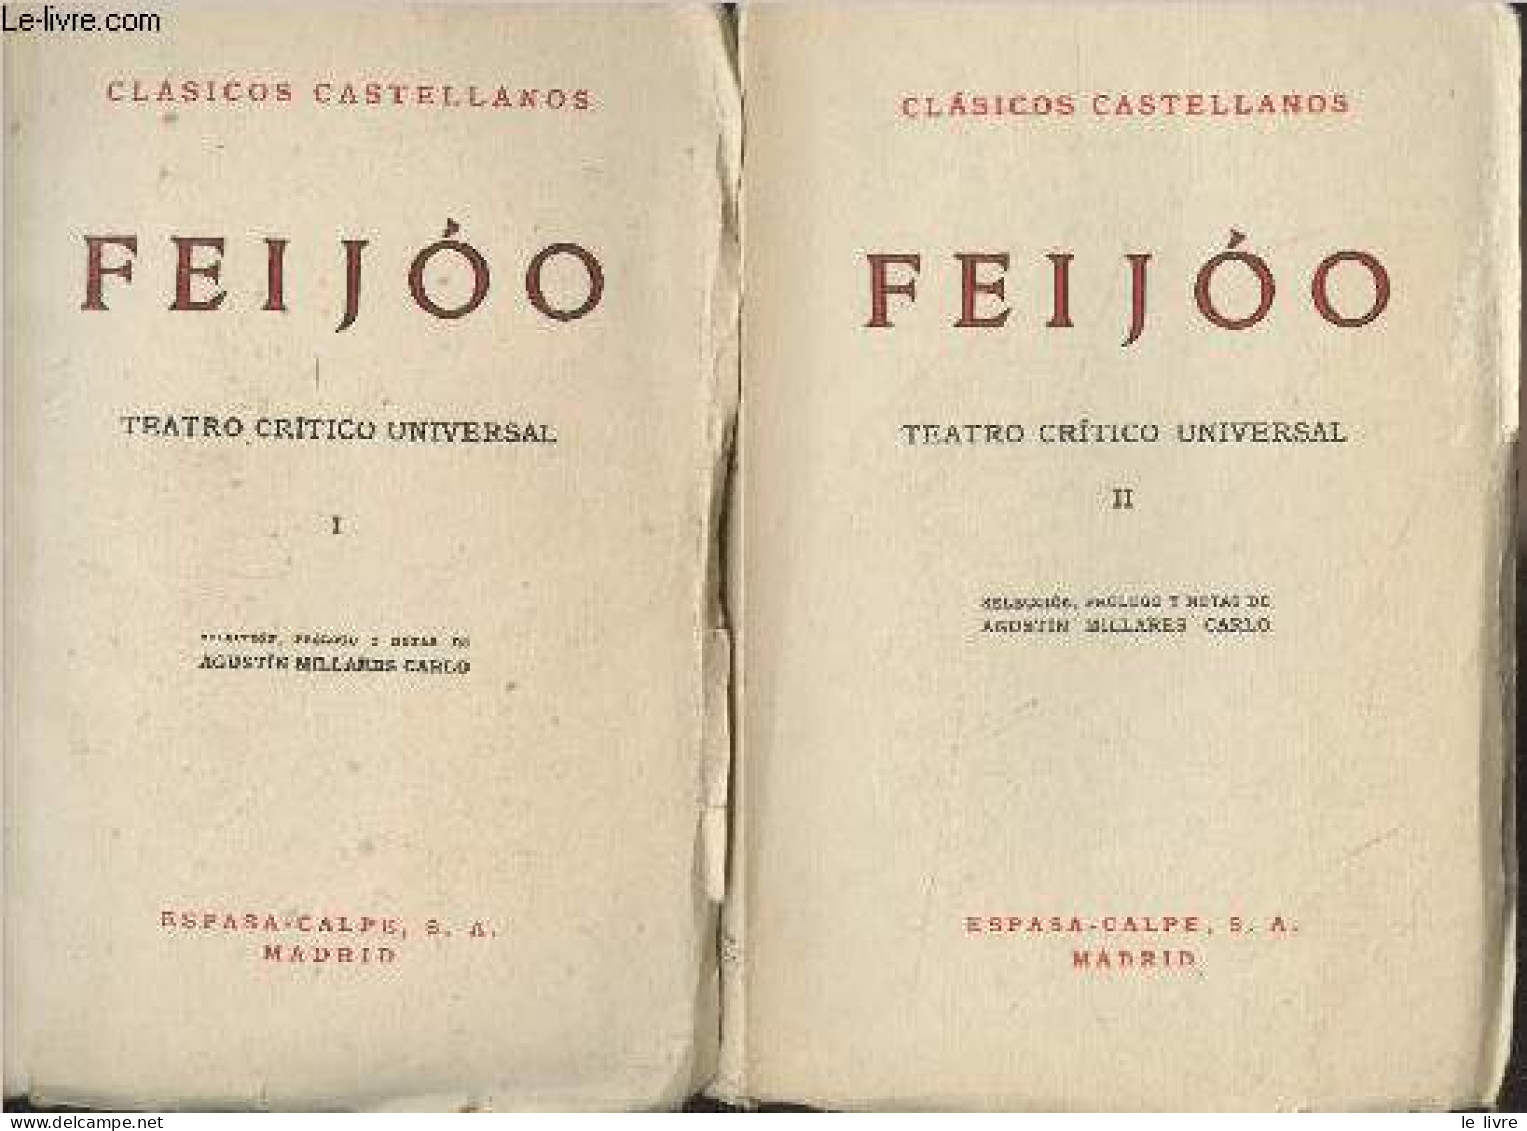 Teatro Critico Universal - III - "Clasicos Castellanos" N°48/53 - Feijoo - 1965 - Cultura